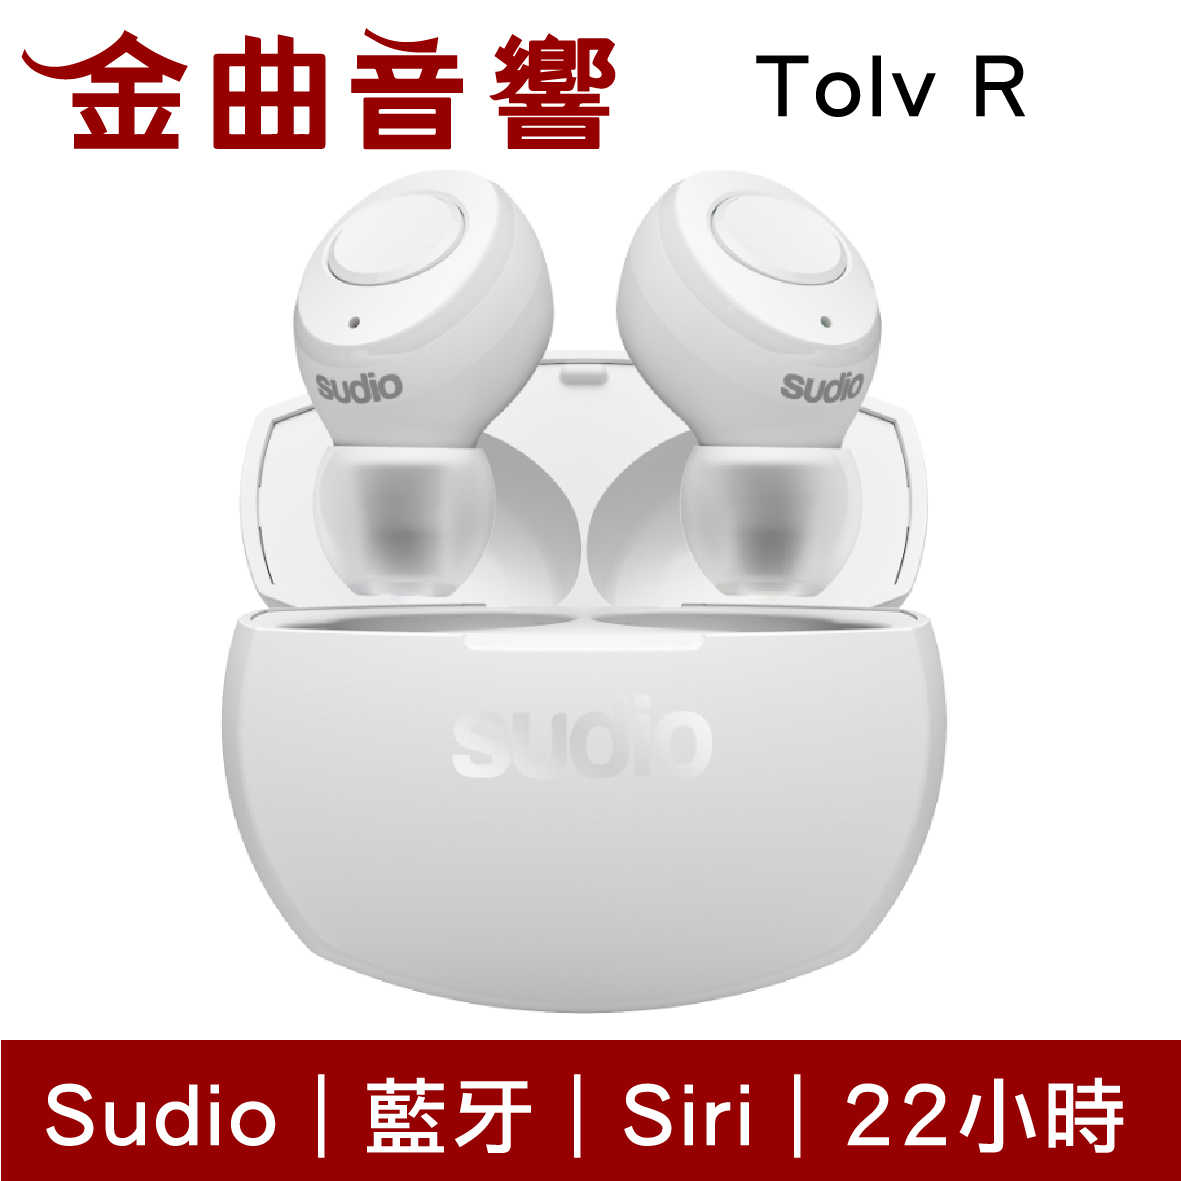 Sudio Tolv R 多色可選 真無線 藍芽耳機 可通話 語音助理 TolvR | 金曲音響